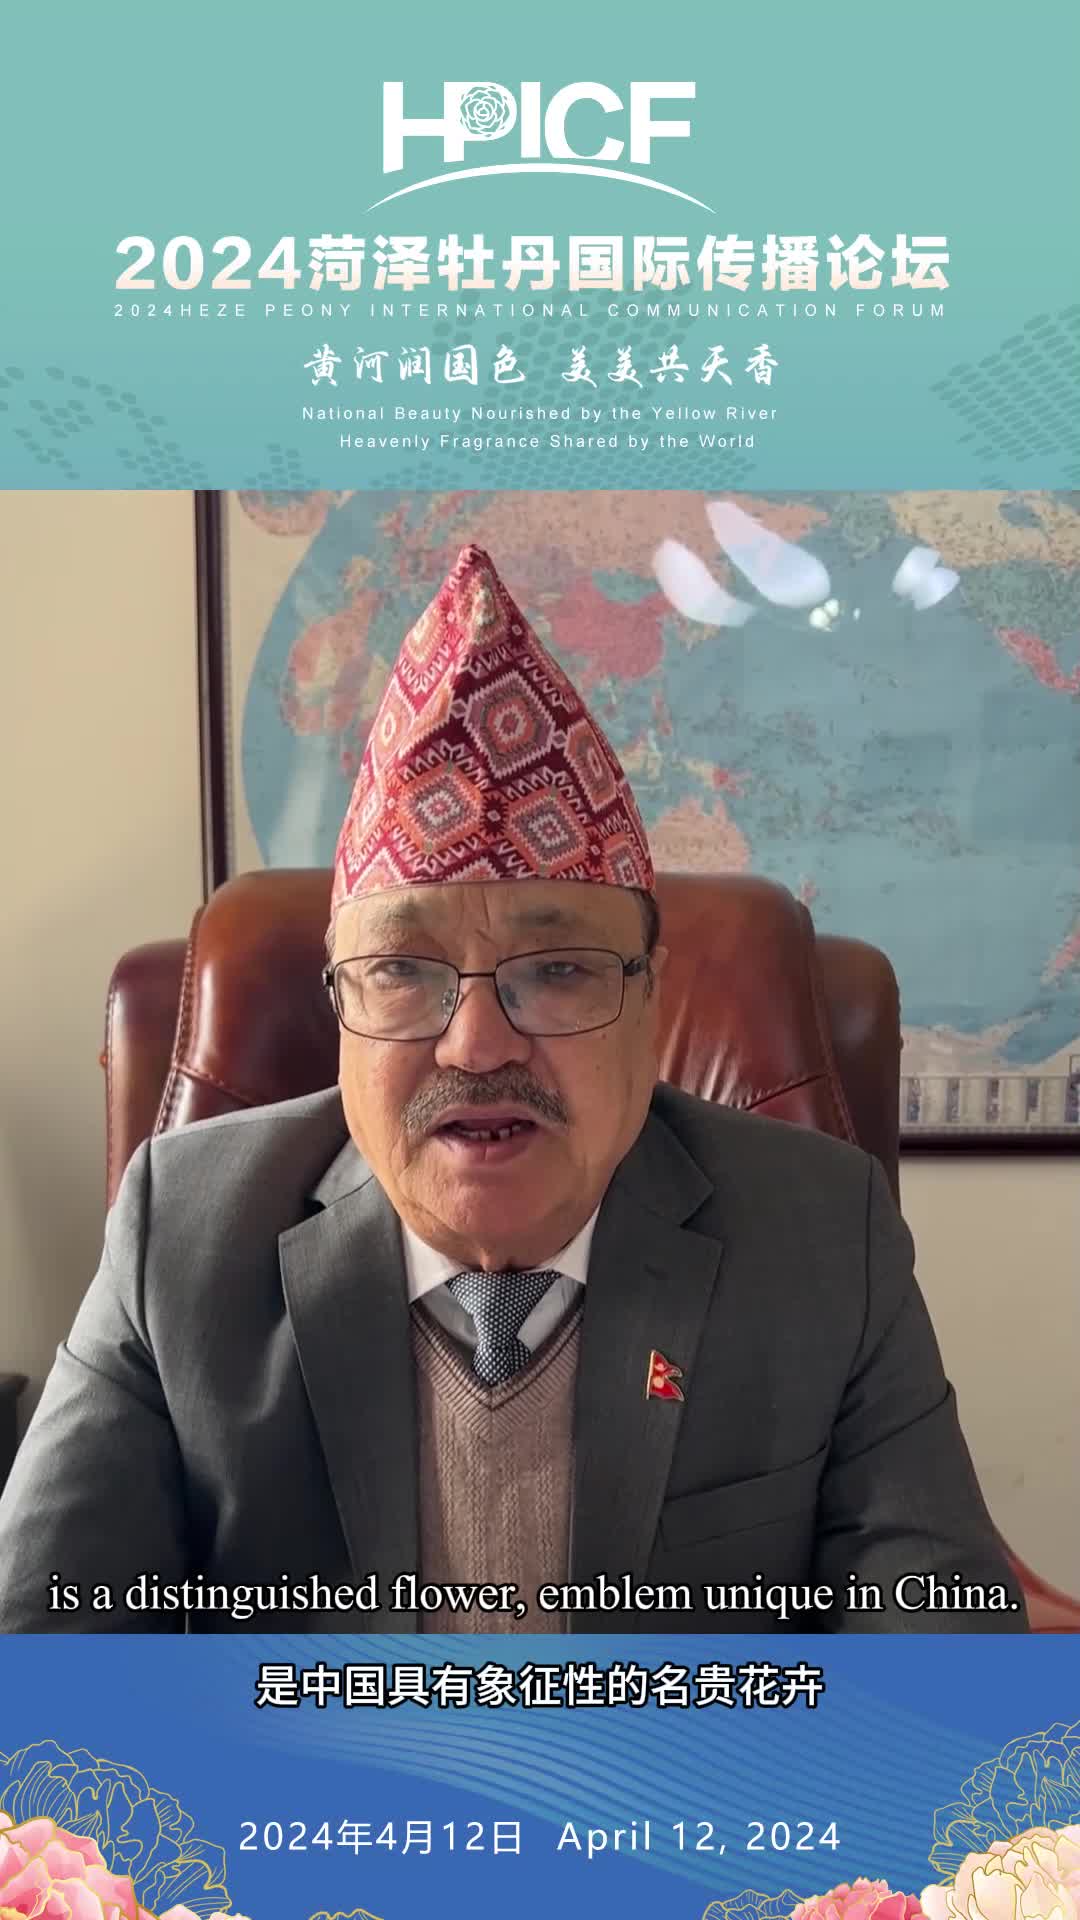 “国色天香”、“具有象征性” 尼泊尔驻华大使这样推介菏泽牡丹